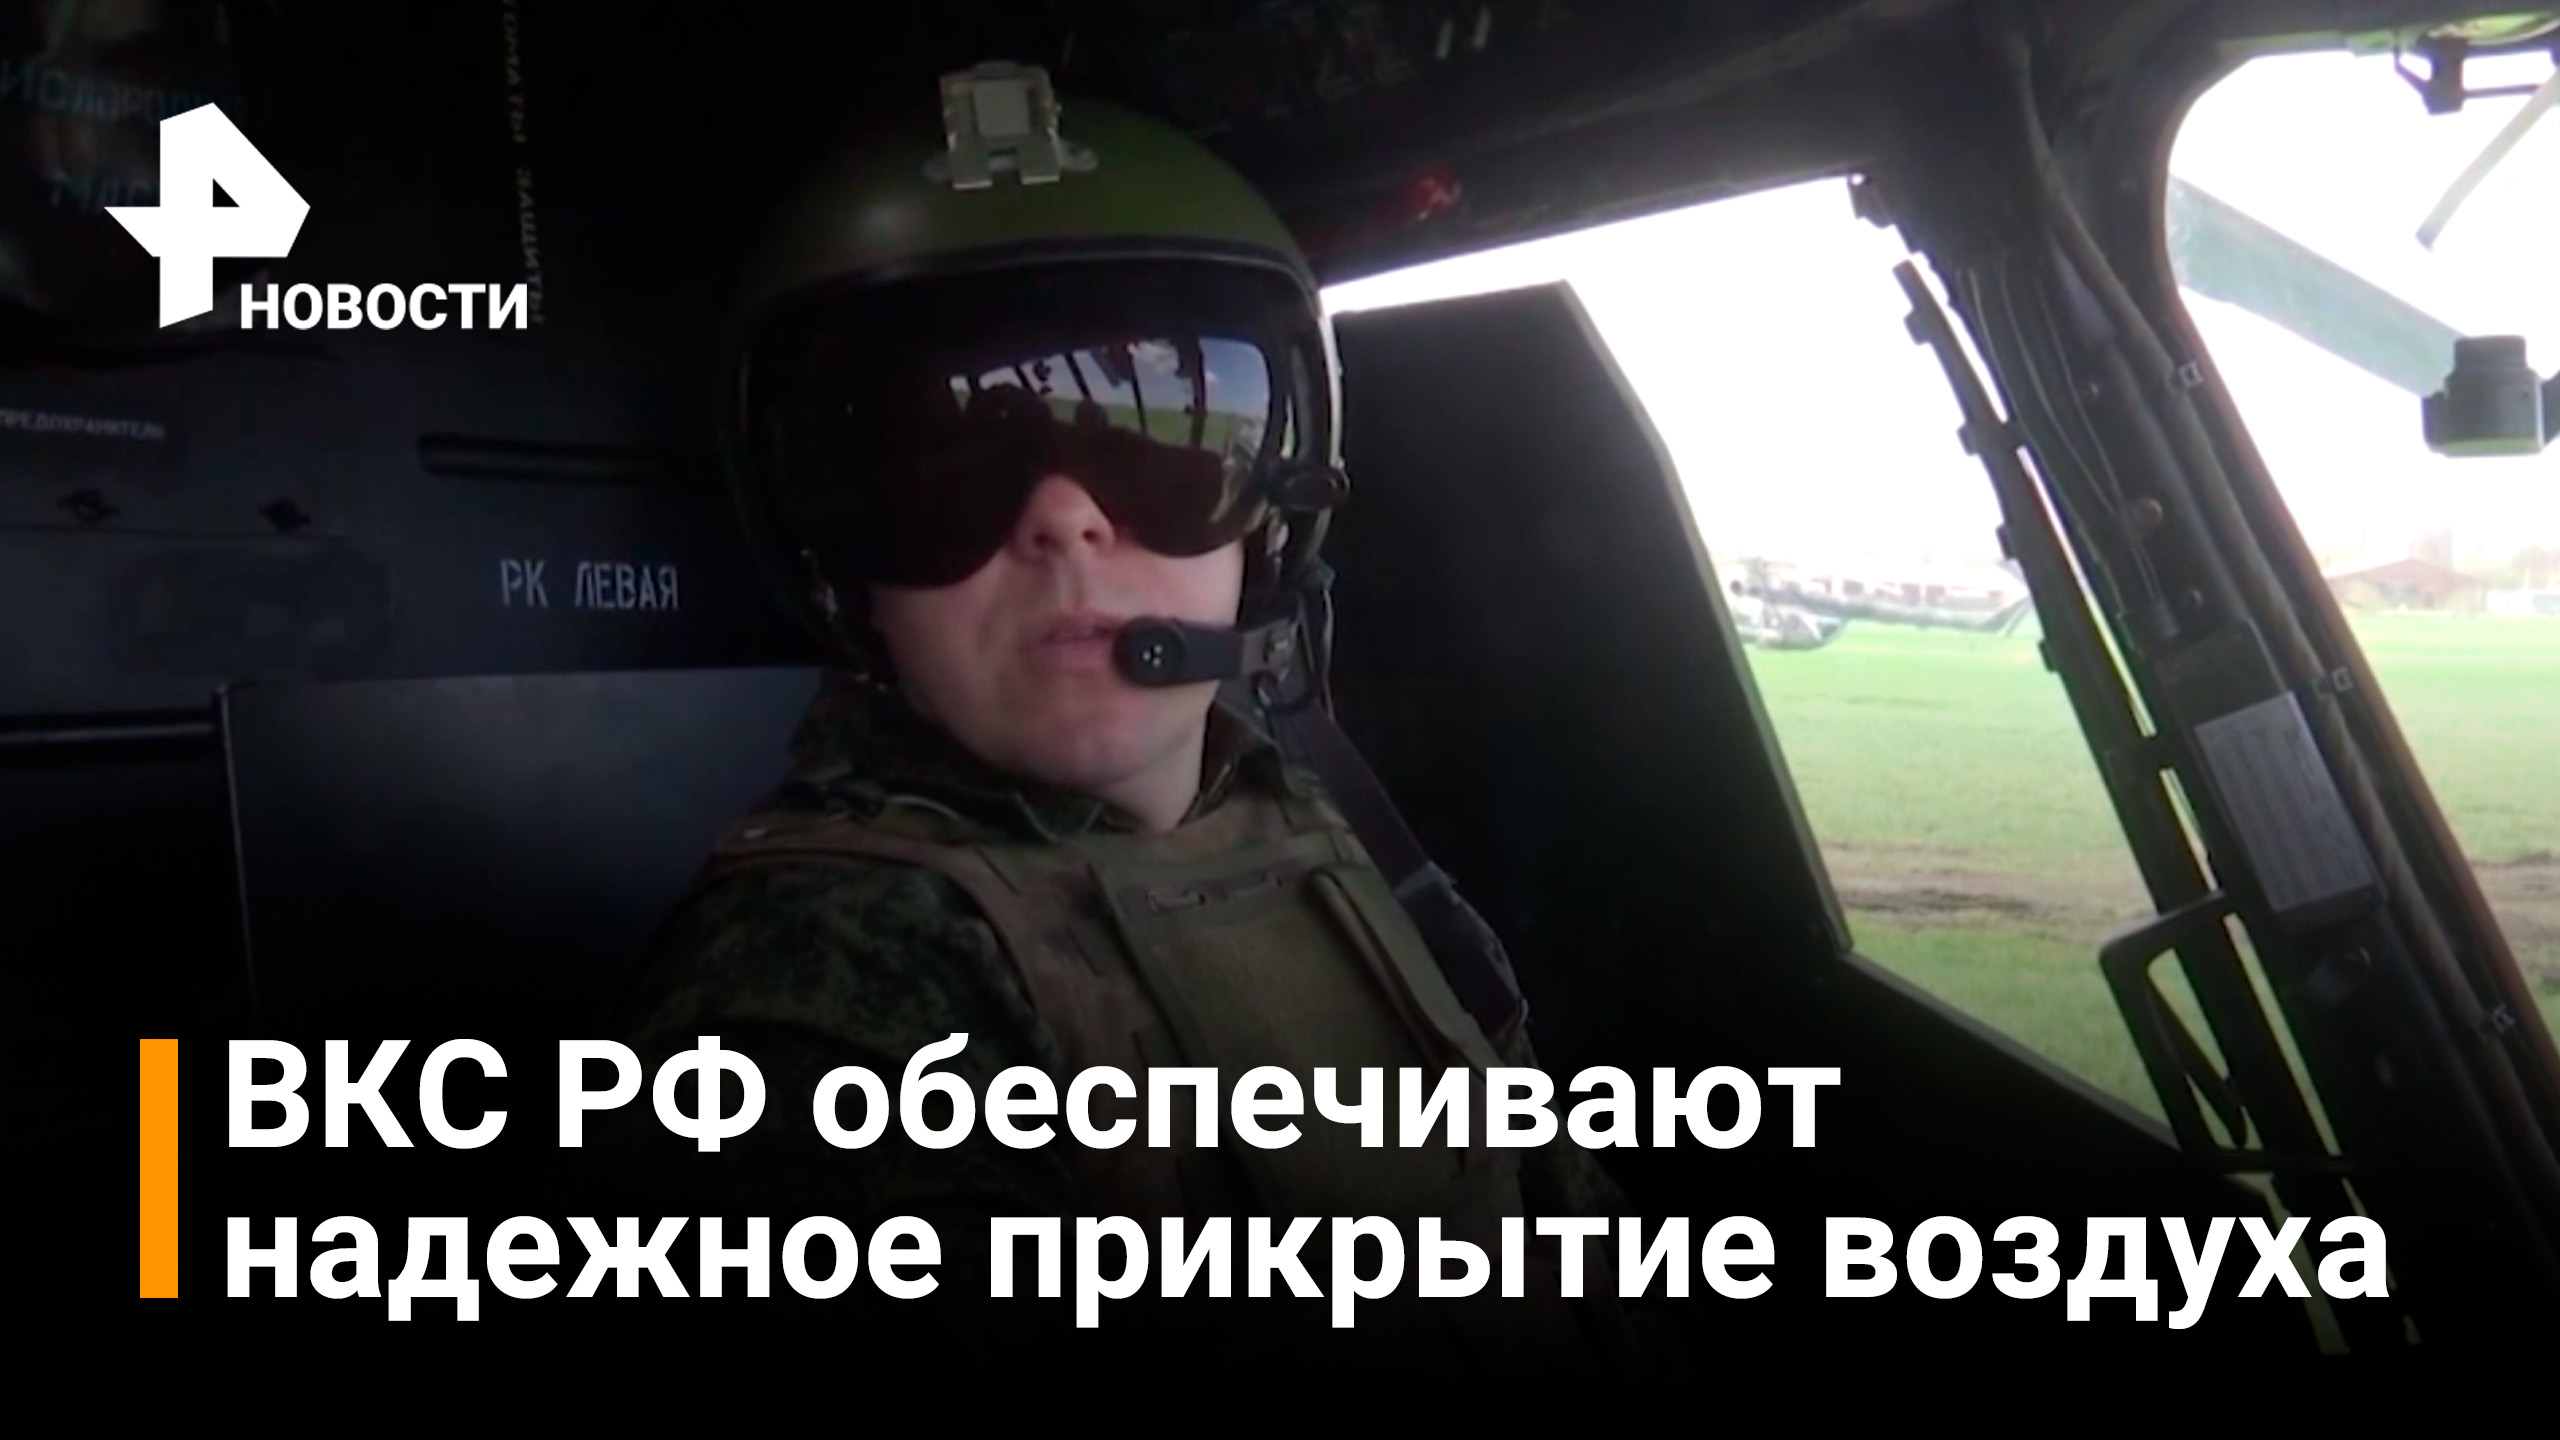 Летчики ВКС РФ обеспечивают надежное прикрытие воинских колонн / РЕН Новости